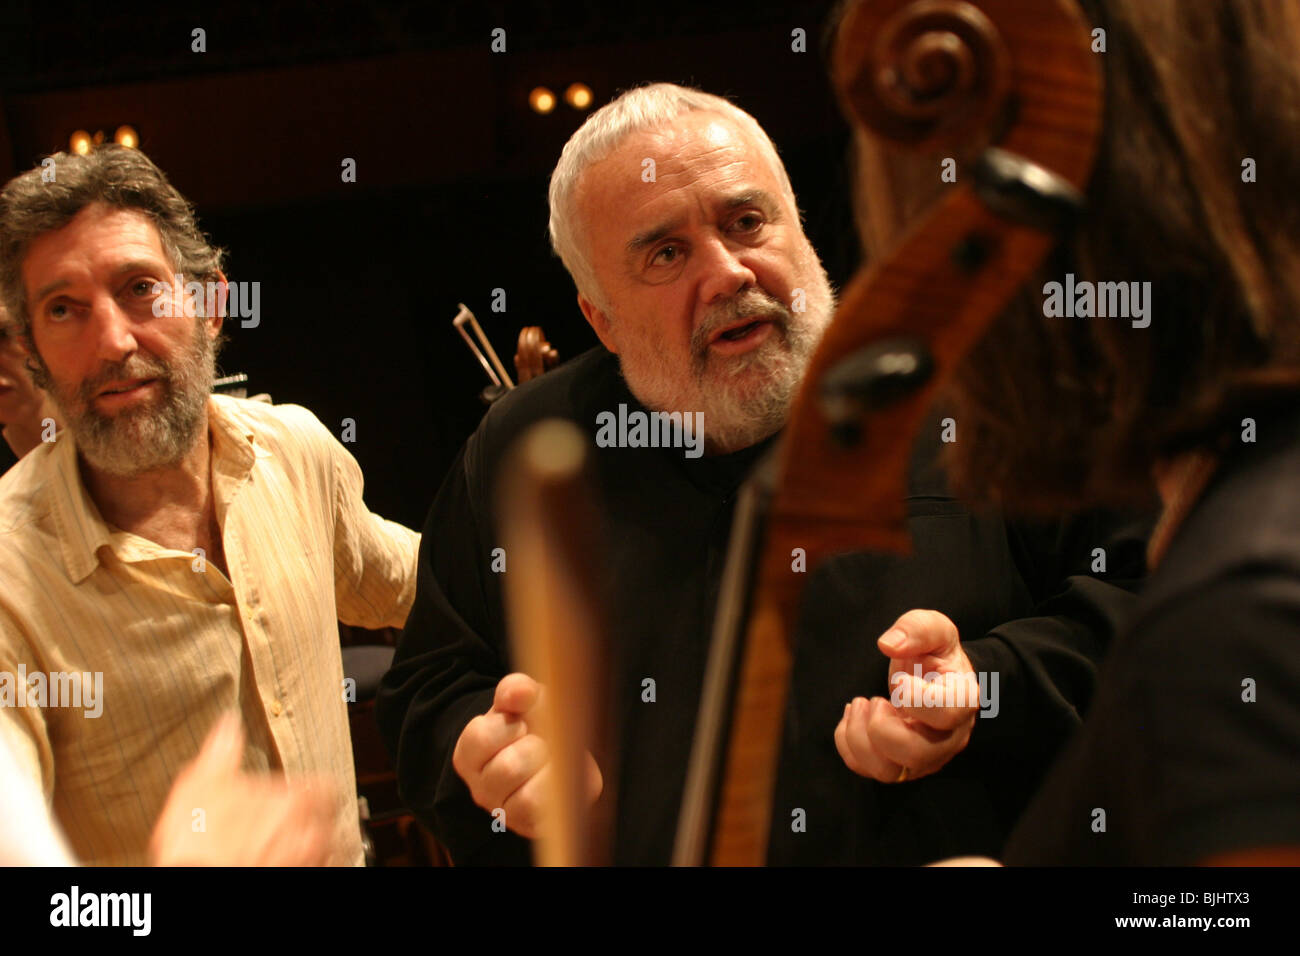 Orchestre Gianluigi Gelmetti (en noir) dirige l'Orchestre symphonique de Sydney pendant la répétition à Orchestre symphonique d'Osaka, Japon Banque D'Images